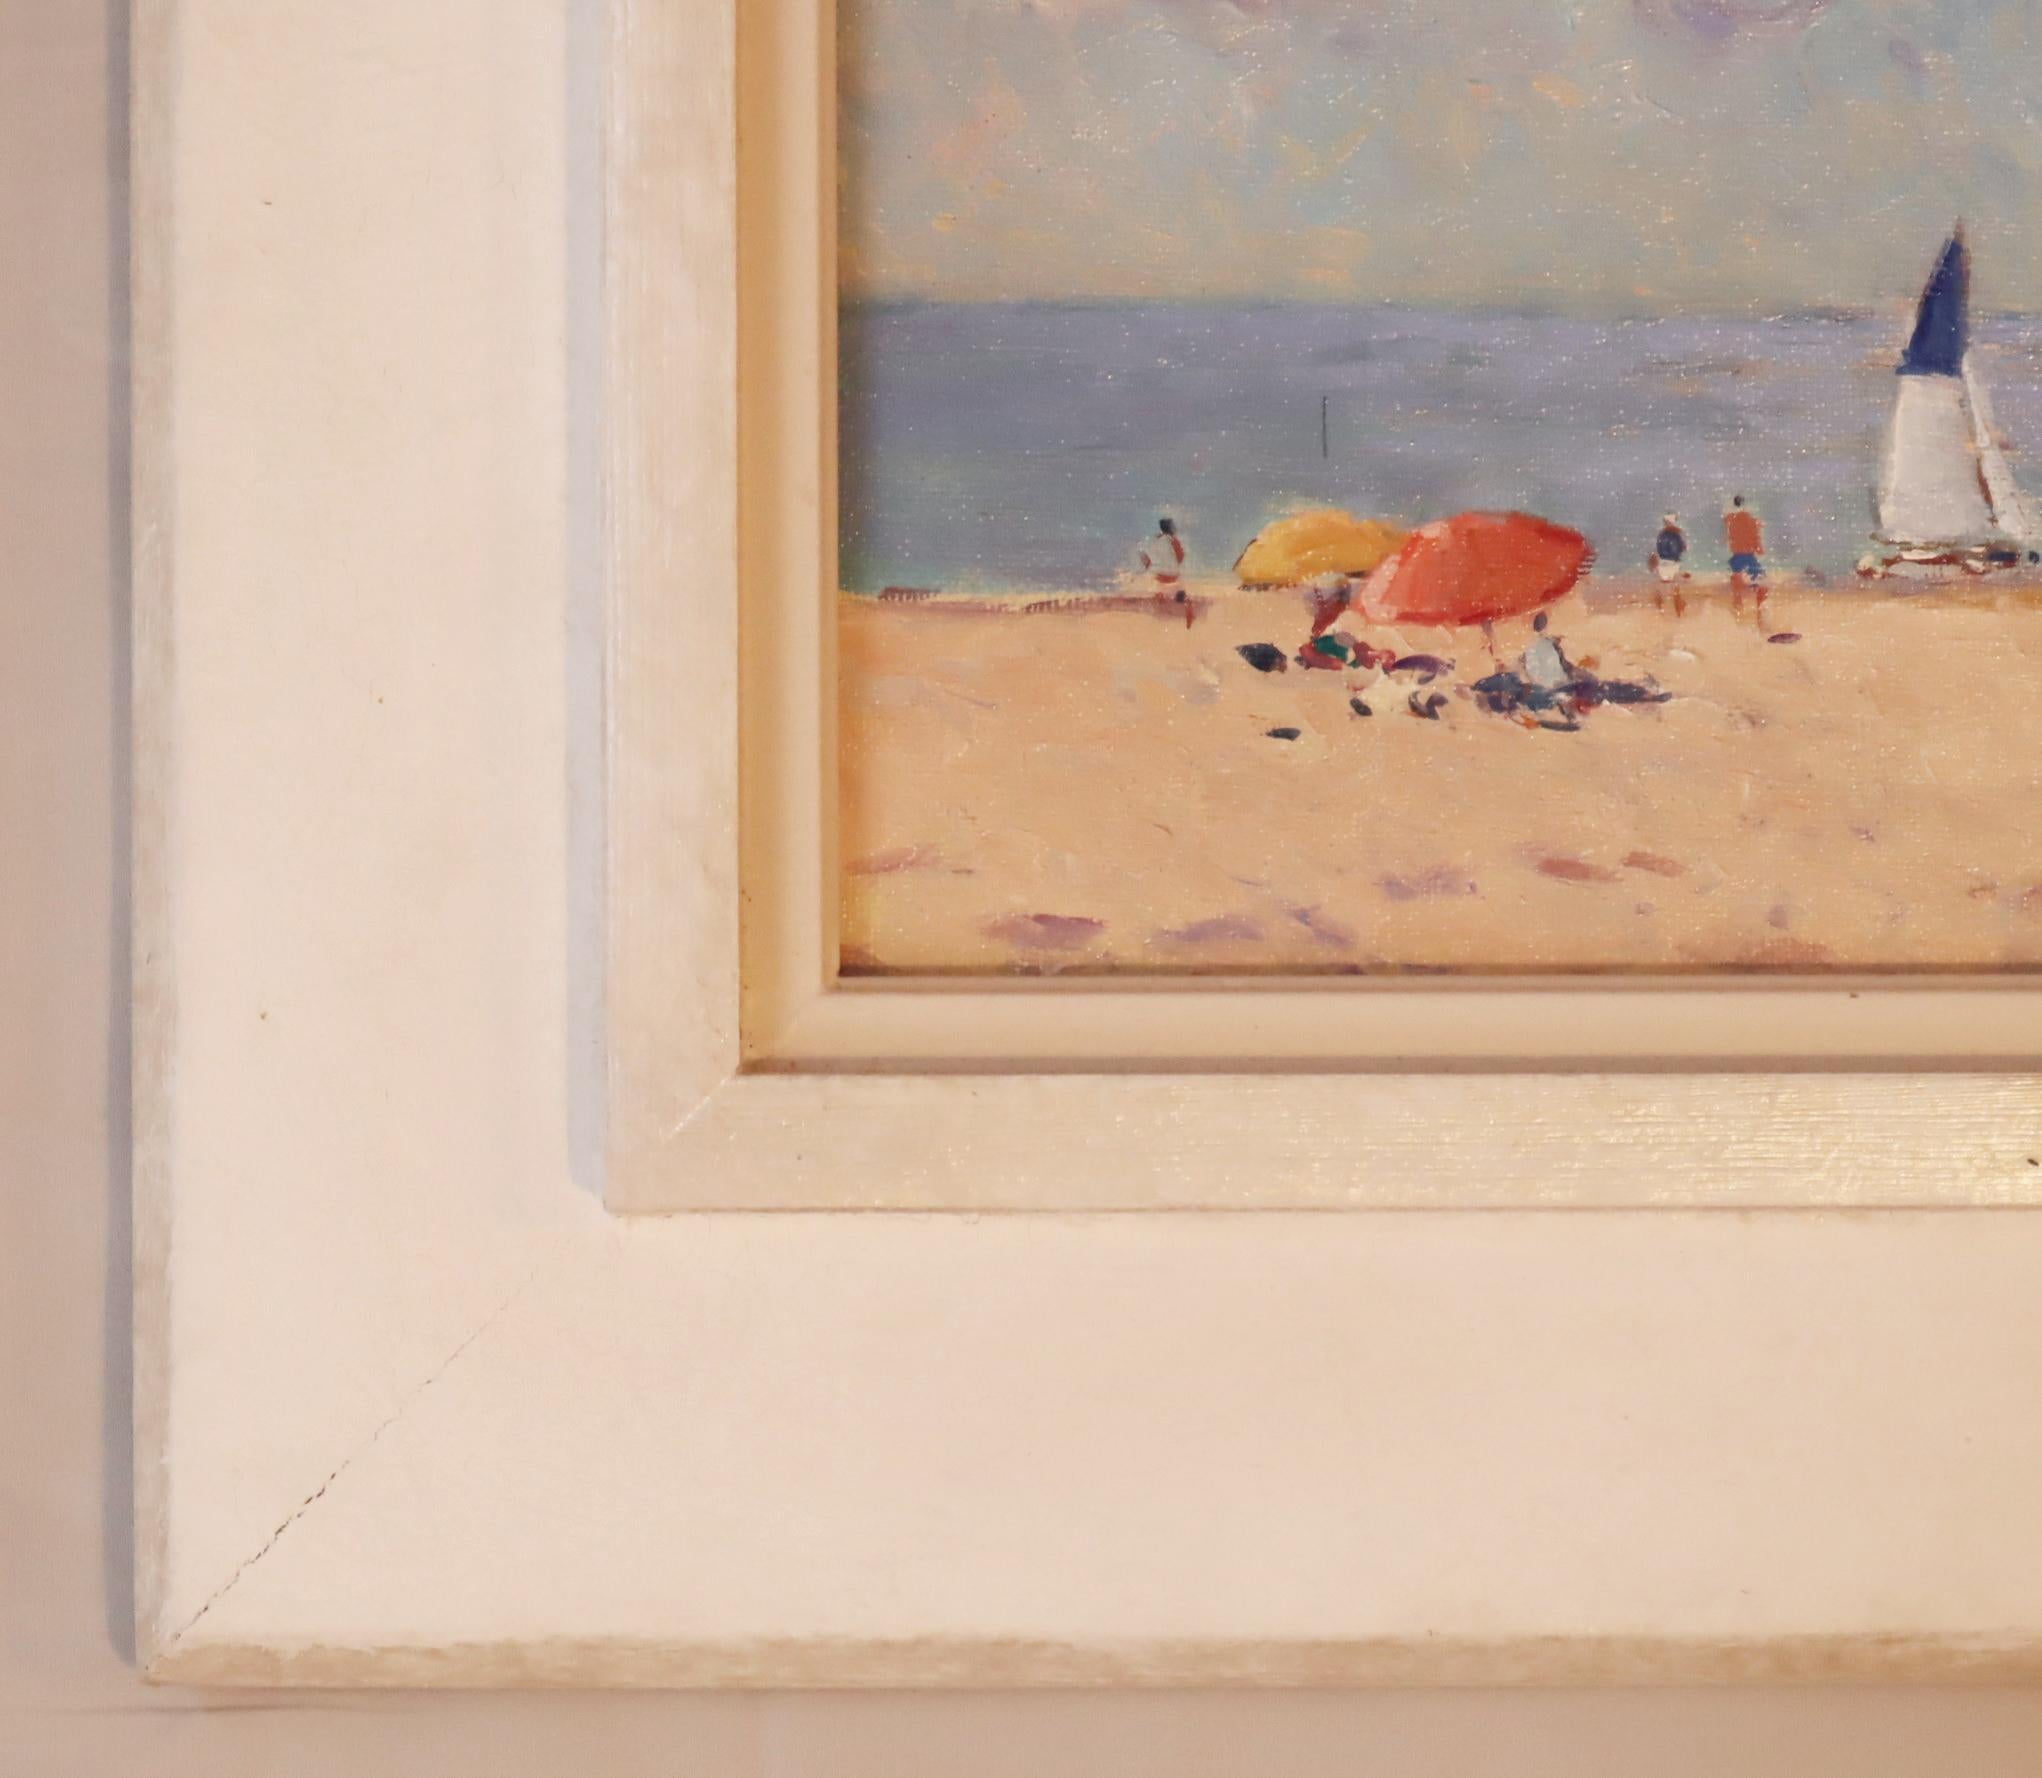 Oiled Niek Van Der Plas, Oil on Canvas, Summer Beach